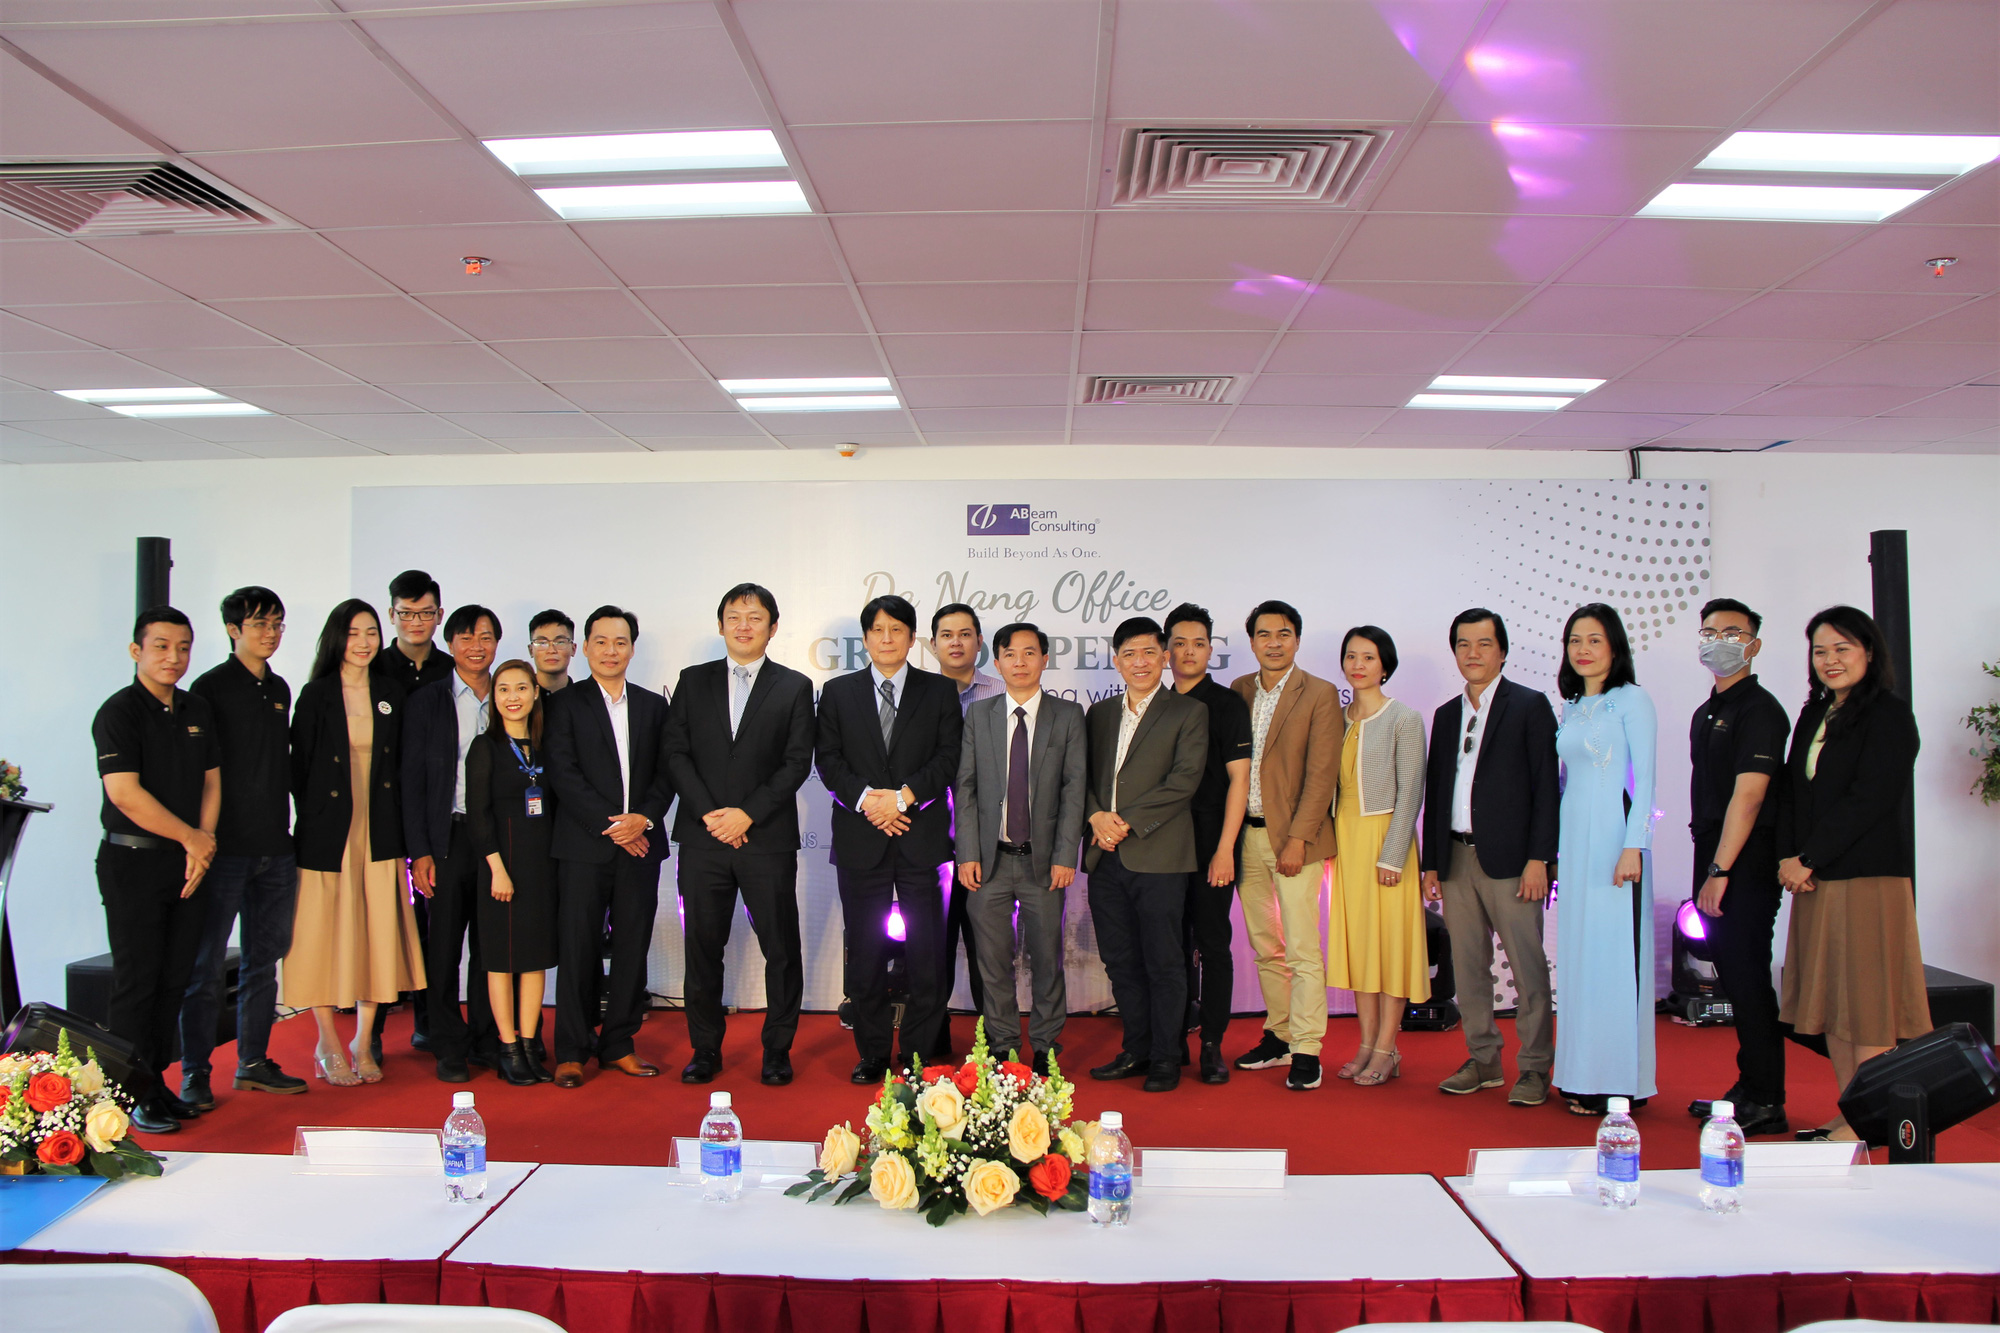  Trường ĐH Duy Tân, ABeam Consulting Việt Nam hợp tác về nguồn nhân lực - Ảnh 6.